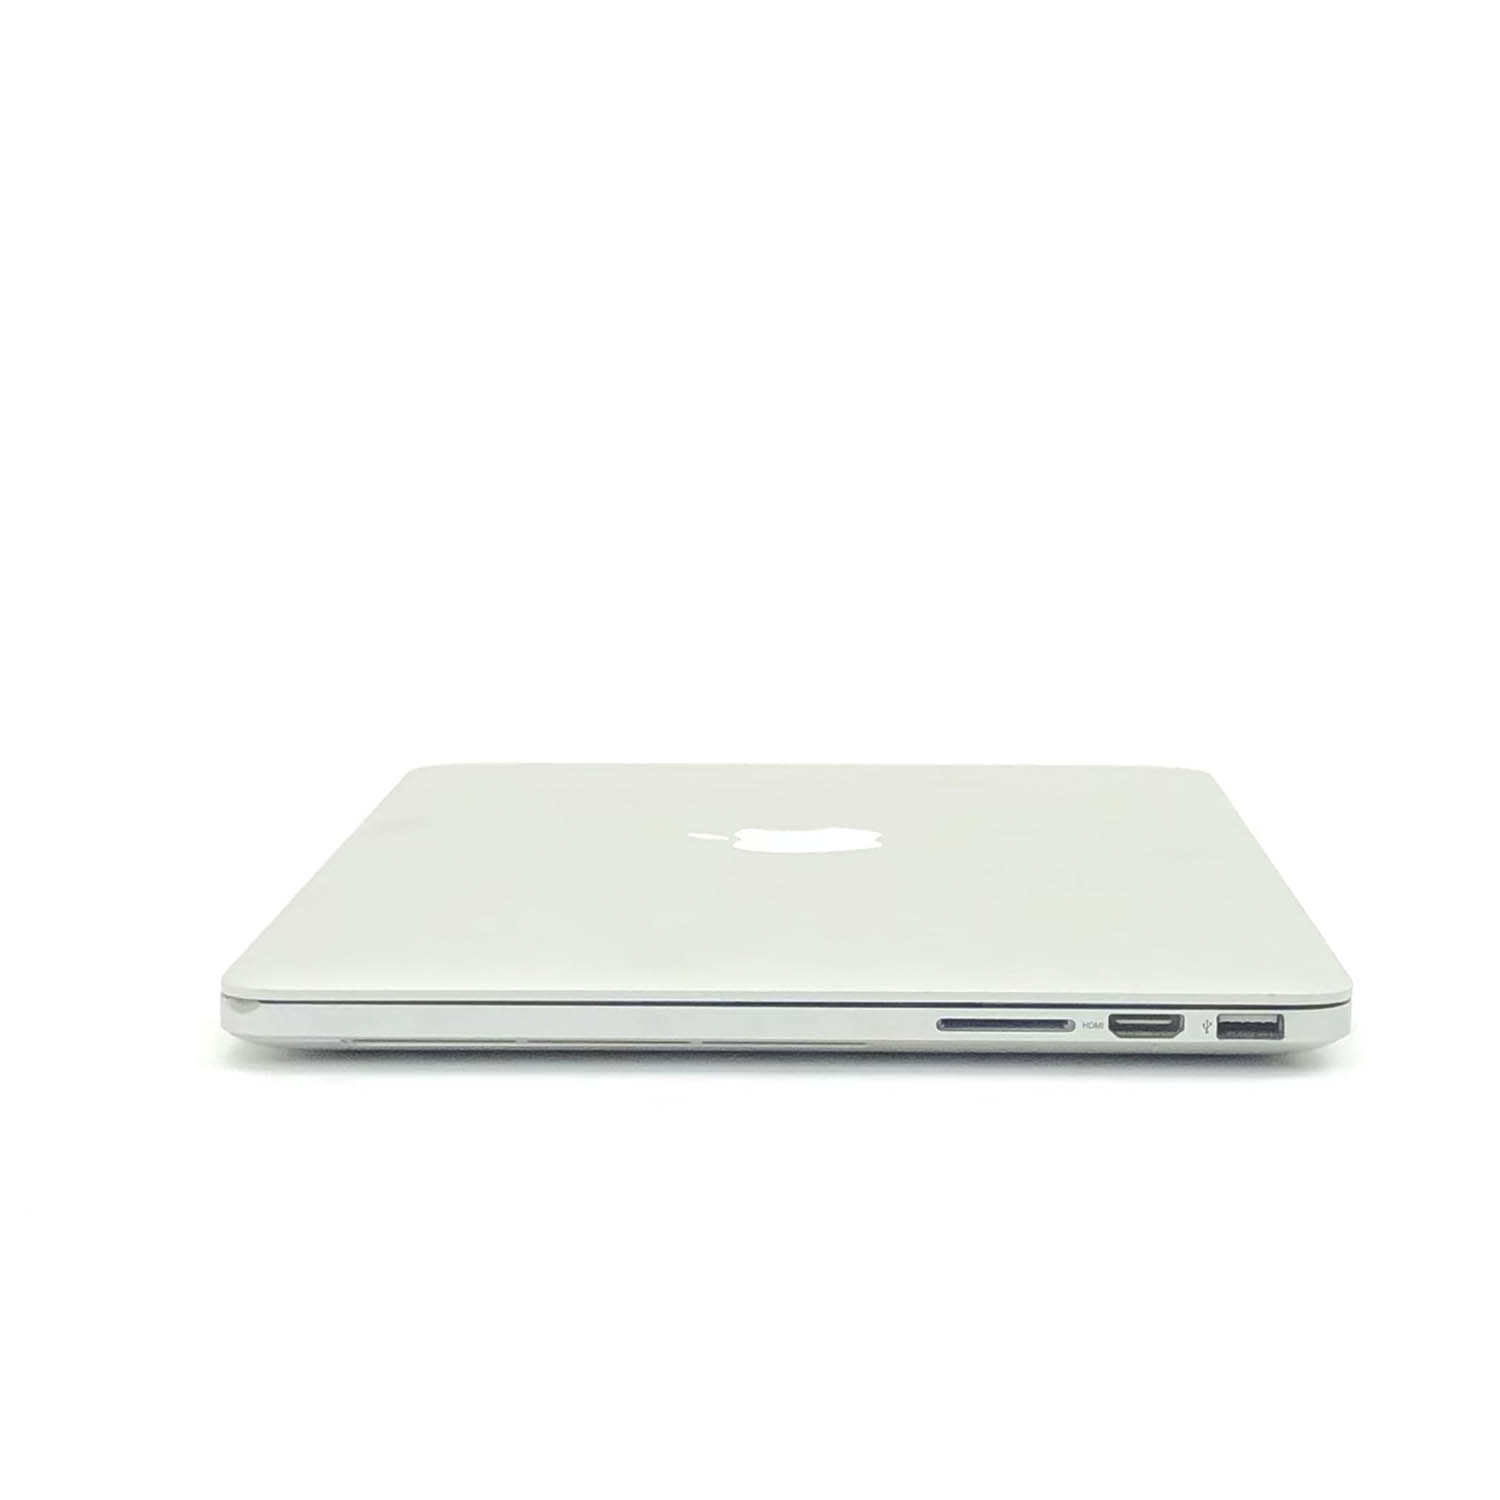 Macbook Pro Retina 13 i5 2.5Ghz 8GB 128GB SSD MD212LL/A  Seminovo